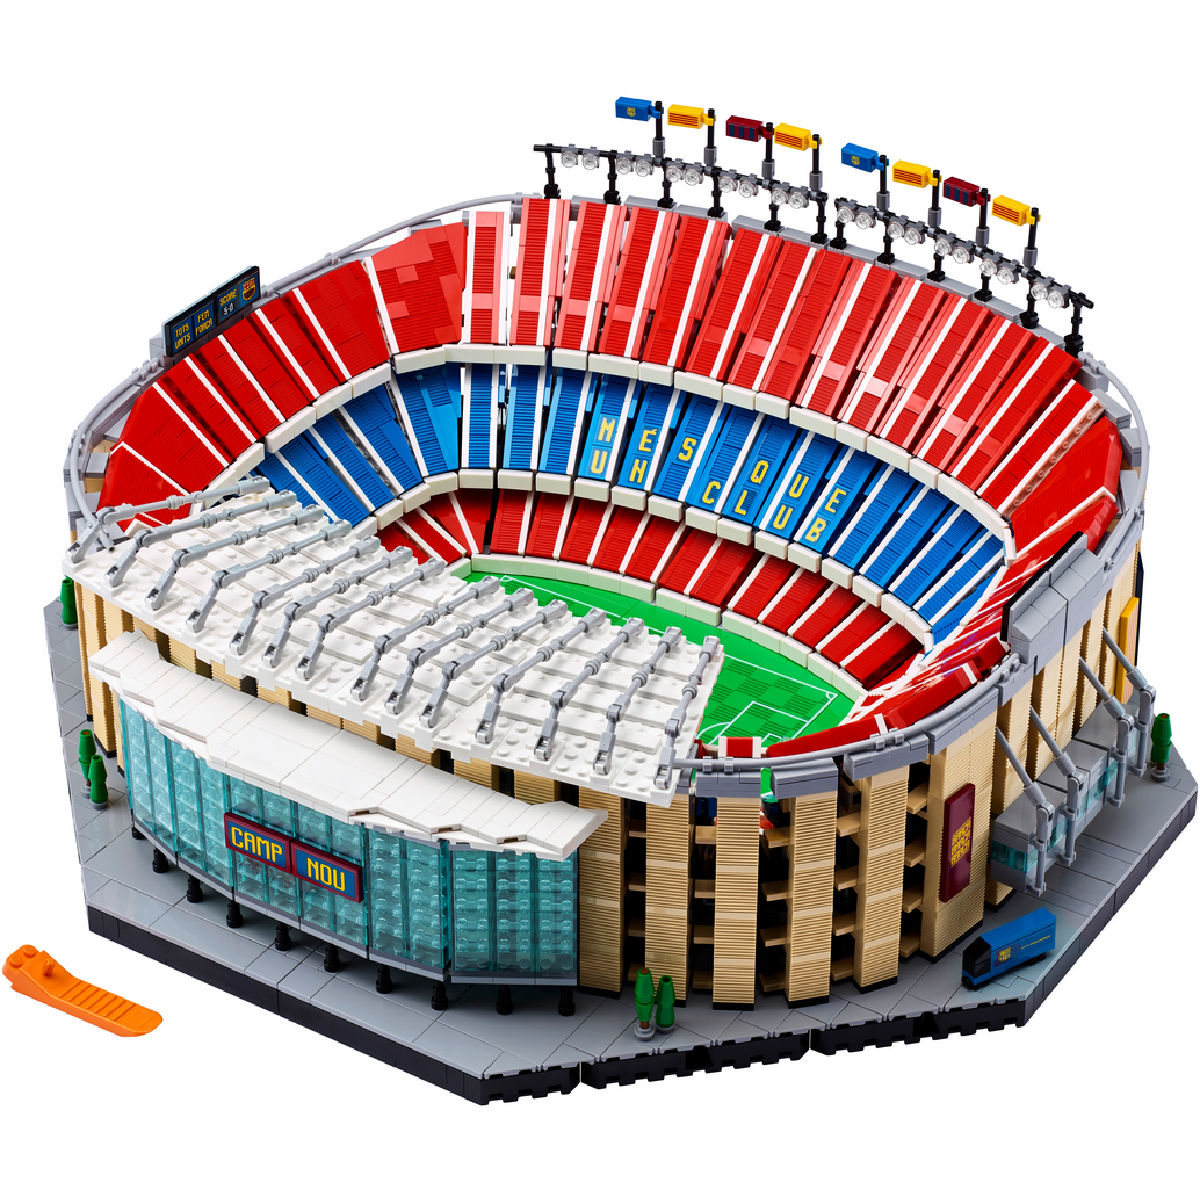 LEGO Icons Camp Nou FC Barcelona Stadium 10284